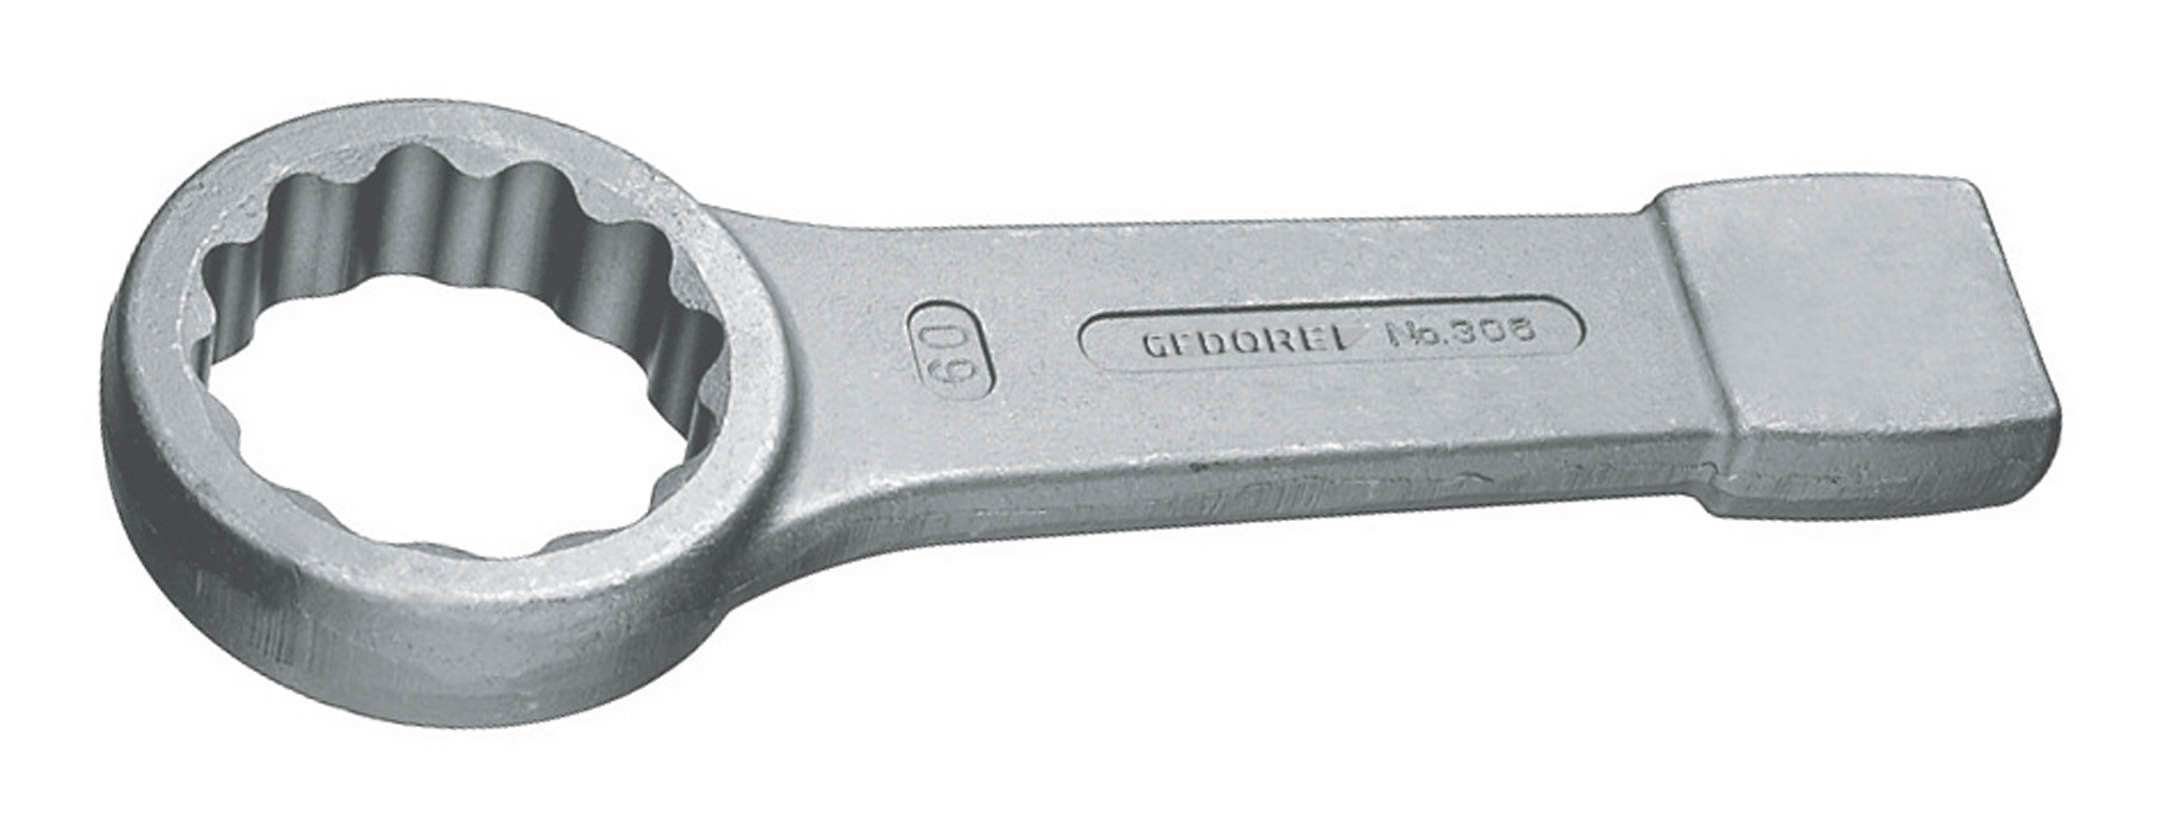 Gedore Ringschlüssel, Schlag DIN7444 75 mm